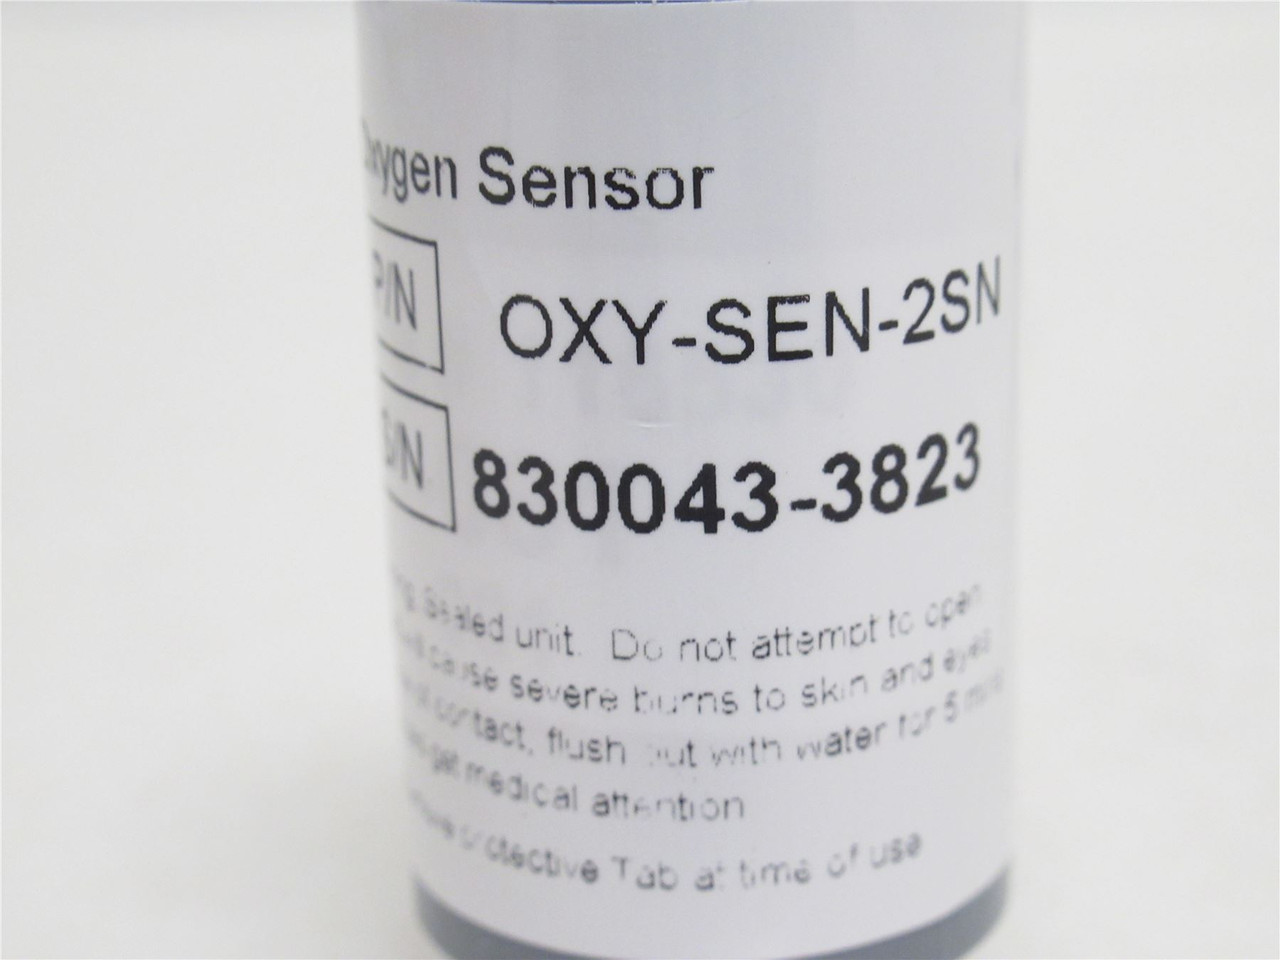 Alpha Omega OXY-SEN-2SN; Oxygen Sensor For Monitor; 0-100%